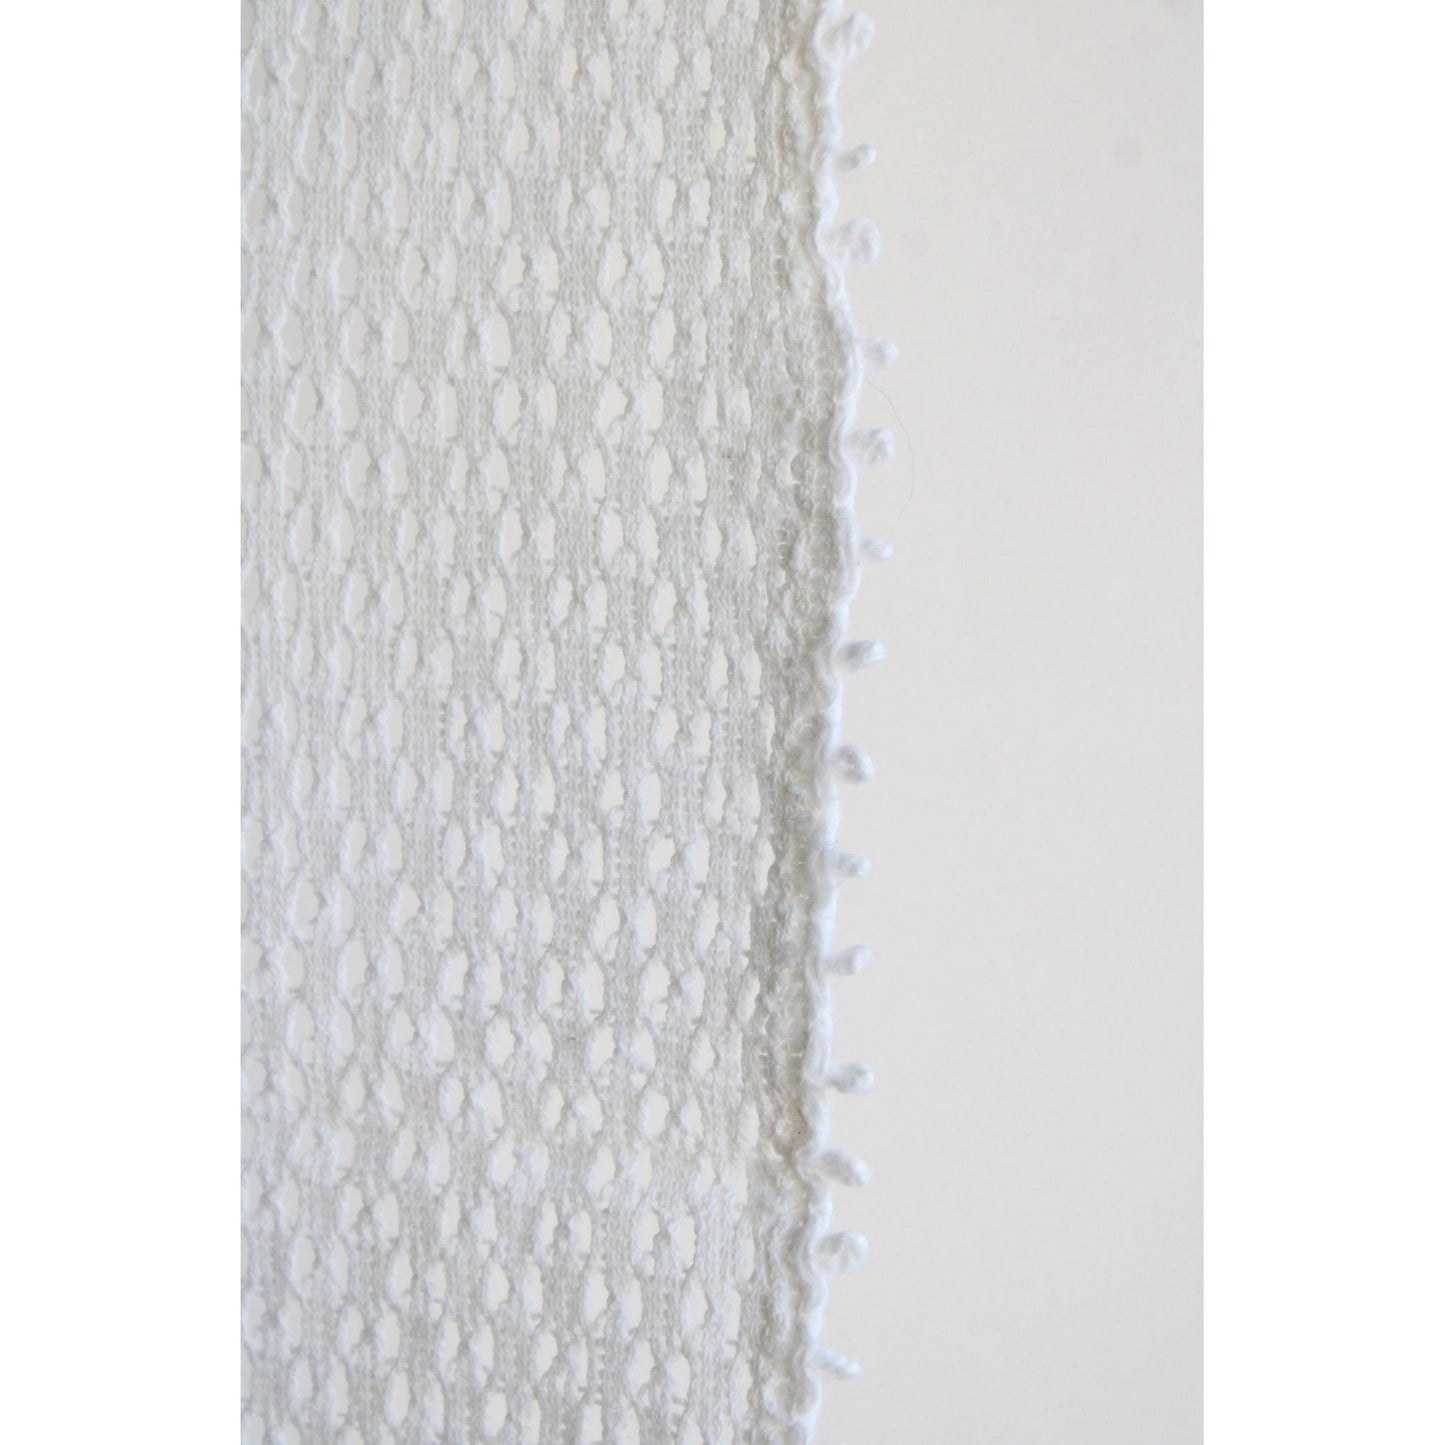 Vintage 1960s Crochet Table Runner in White